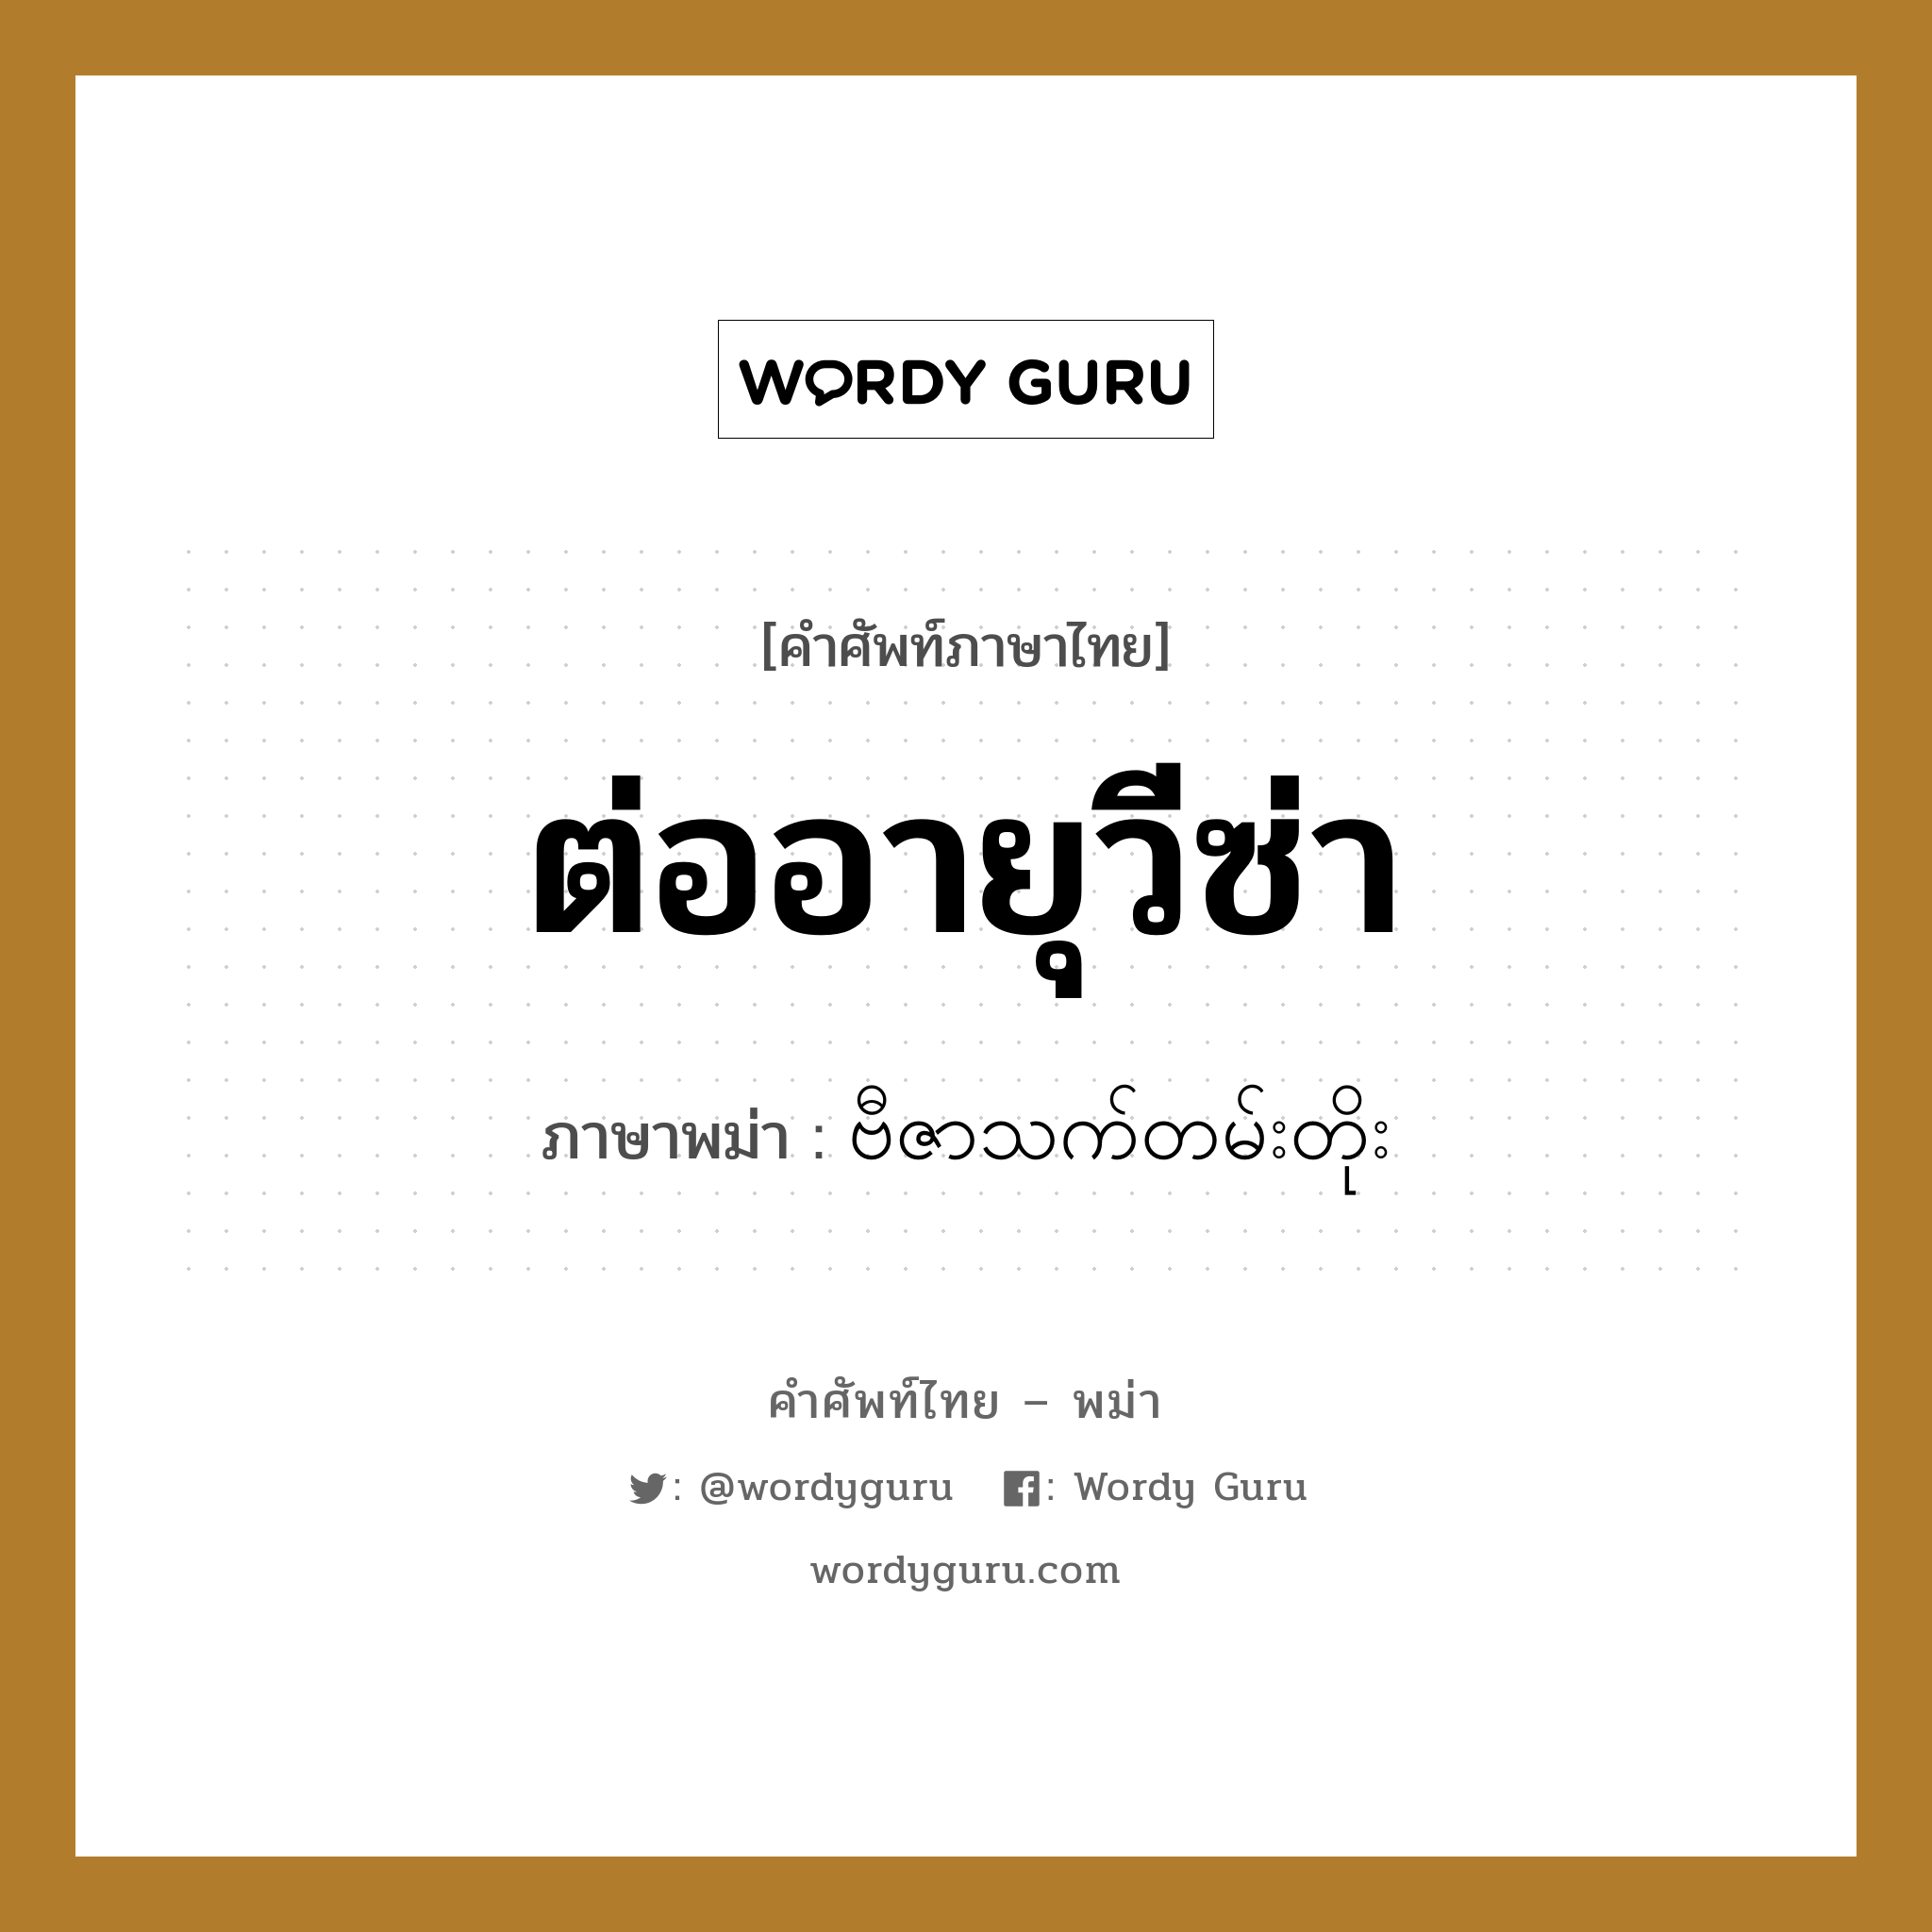 ต่ออายุวีซ่า ภาษาพม่าคืออะไร, คำศัพท์ภาษาไทย - พม่า ต่ออายุวีซ่า ภาษาพม่า ဗီဇာသက်တမ်းတိုး หมวด หมวดการเดินทางทั่วไป หมวด หมวดการเดินทางทั่วไป